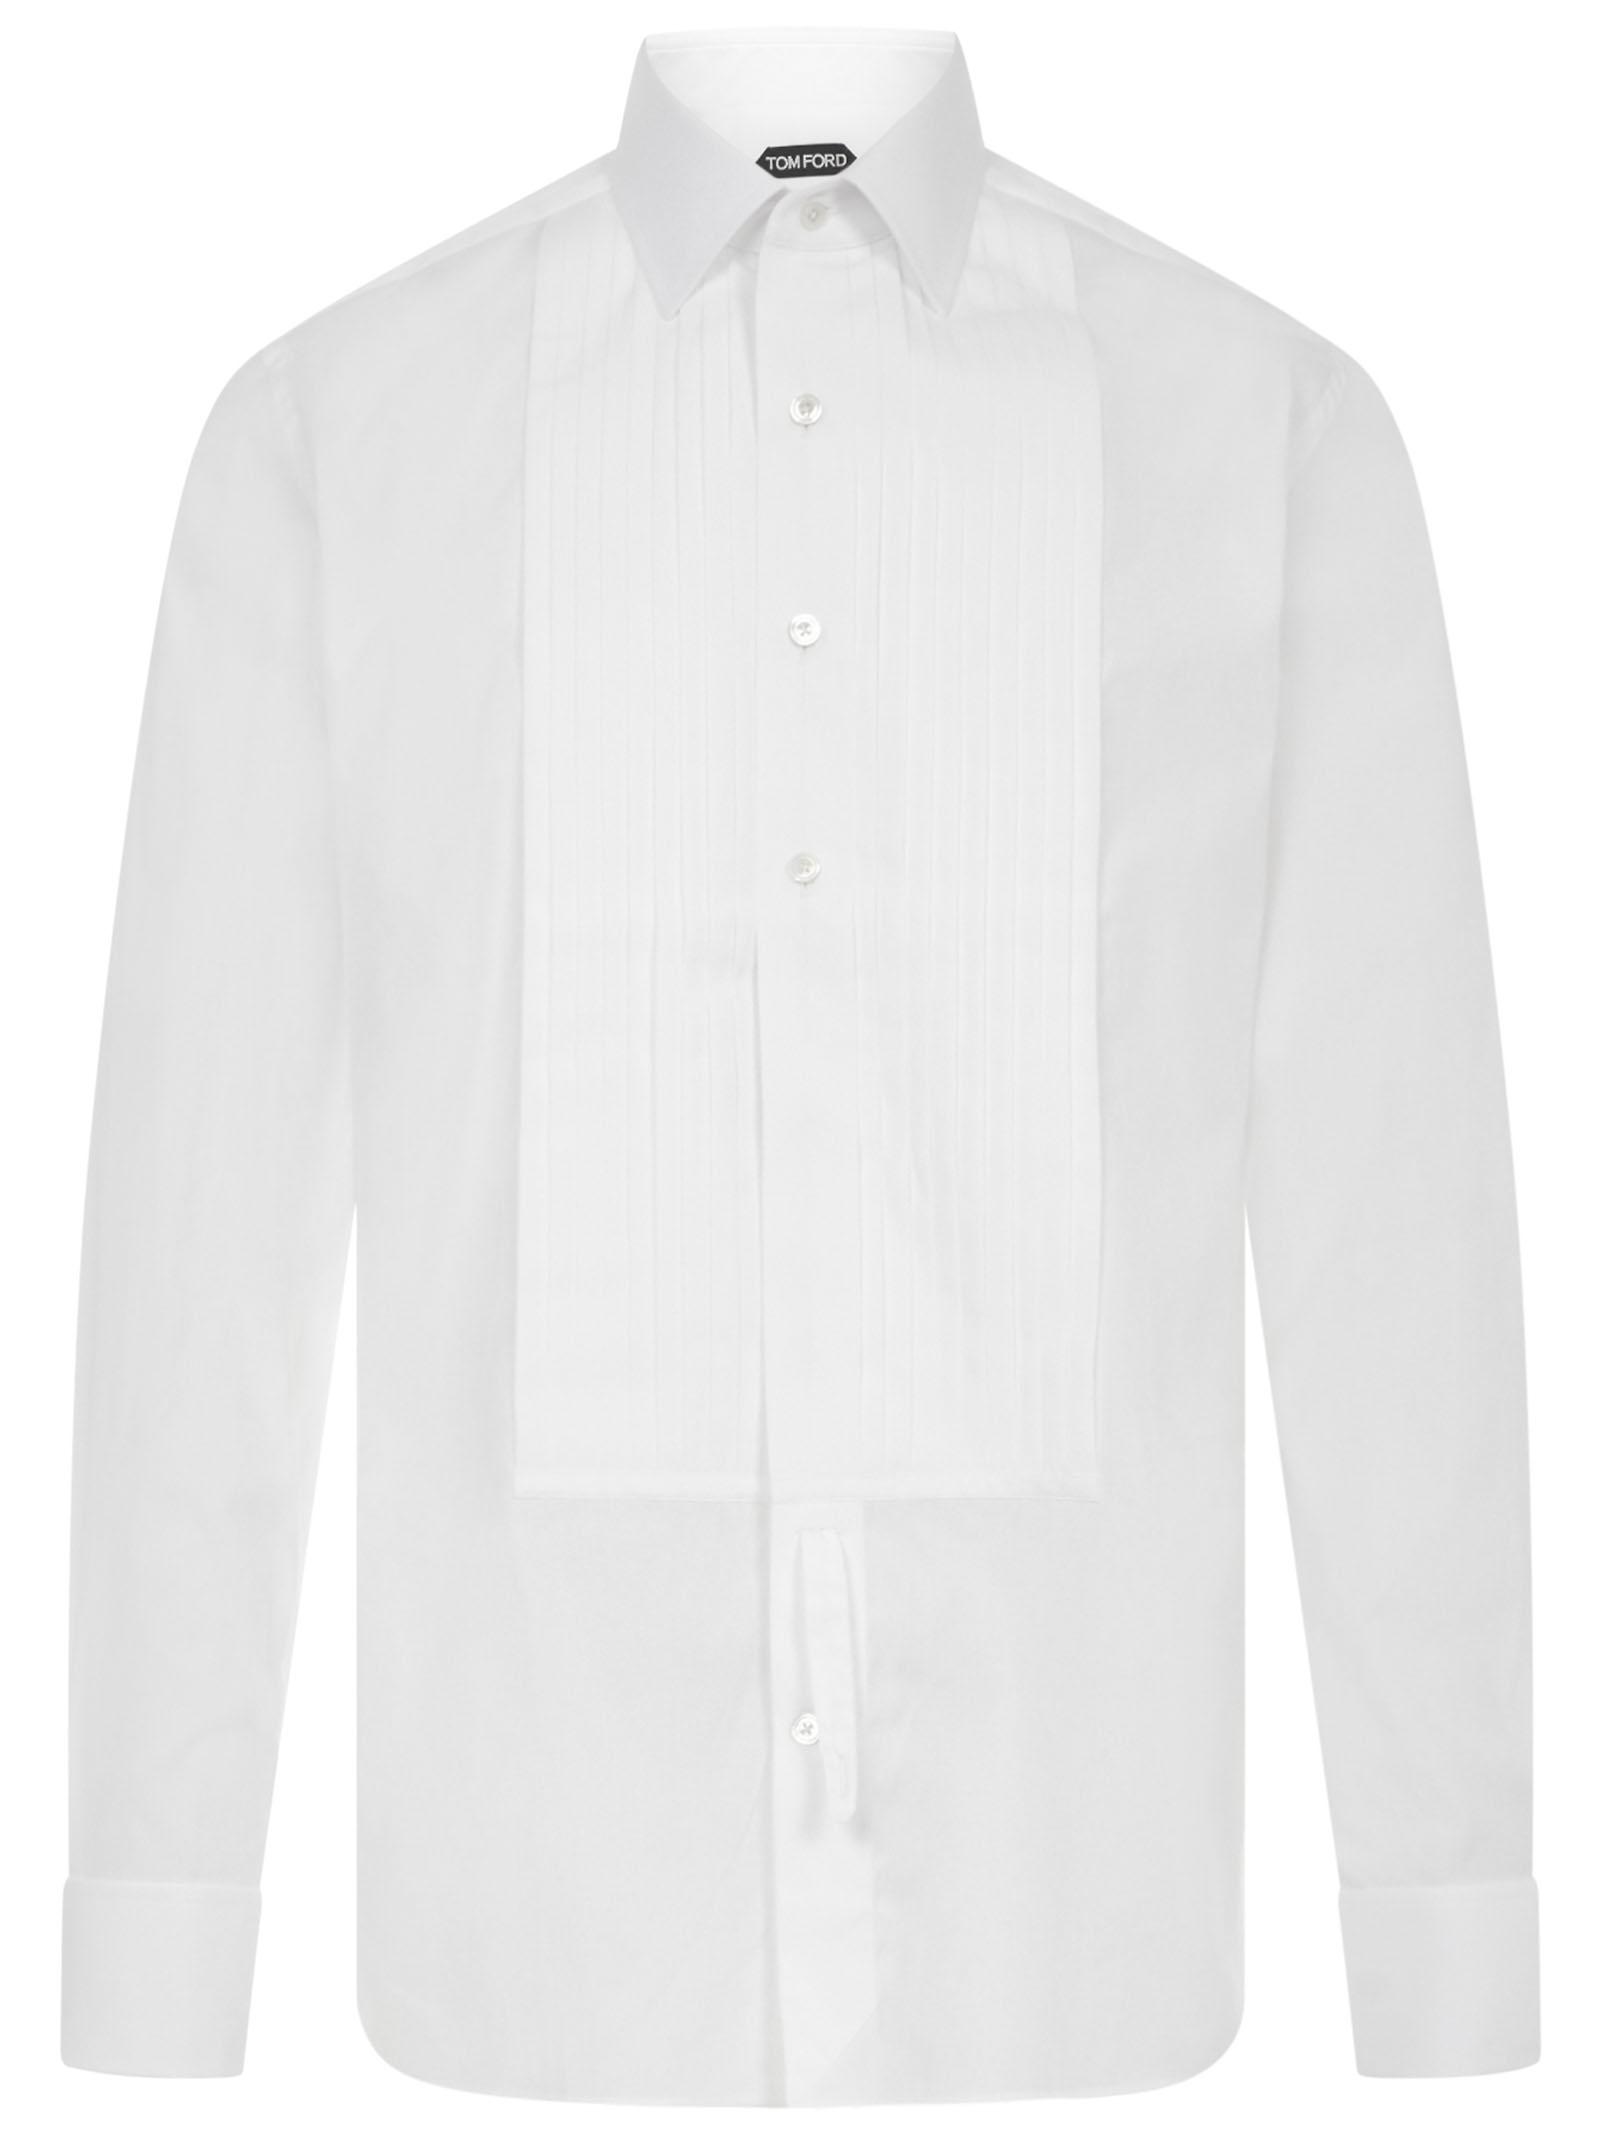 Tom Ford Shirt in White for Men - Lyst